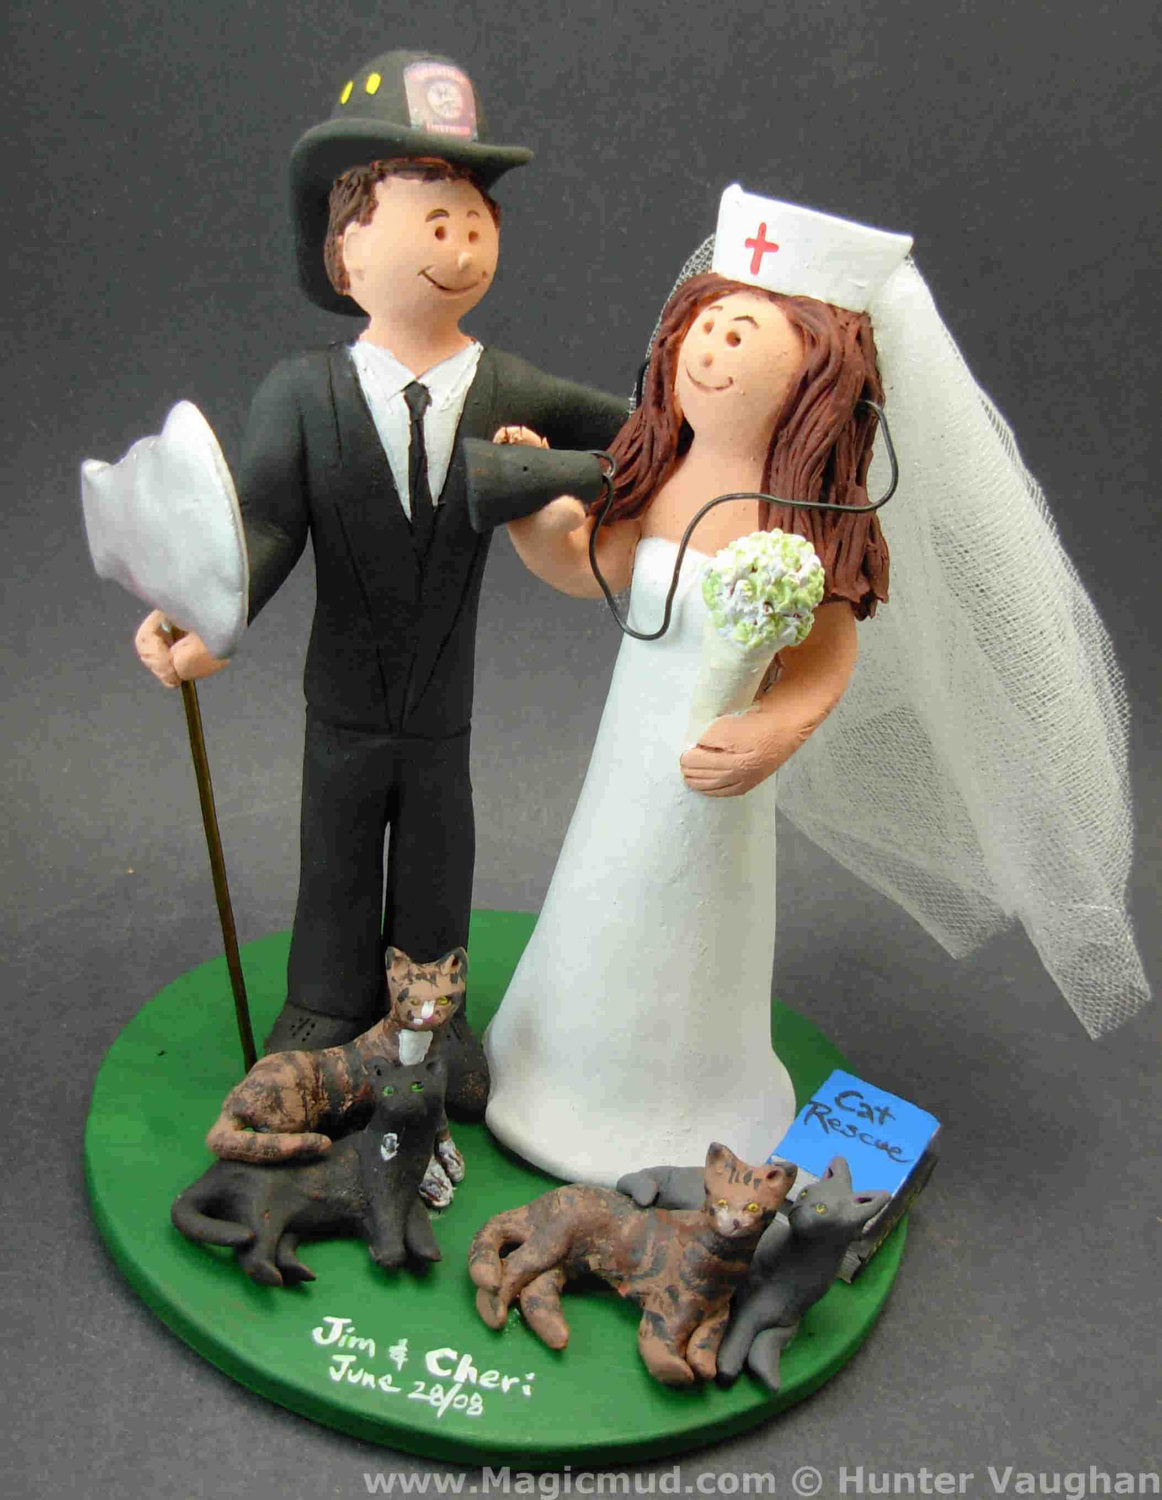 FireFighter Groom Marries Teacher Bride Wedding Cake Topper, Fireman Wedding Cake Topper, Fire Fighters Wedding CakeTopper, Fireman Figurine - iWeddingCakeToppers